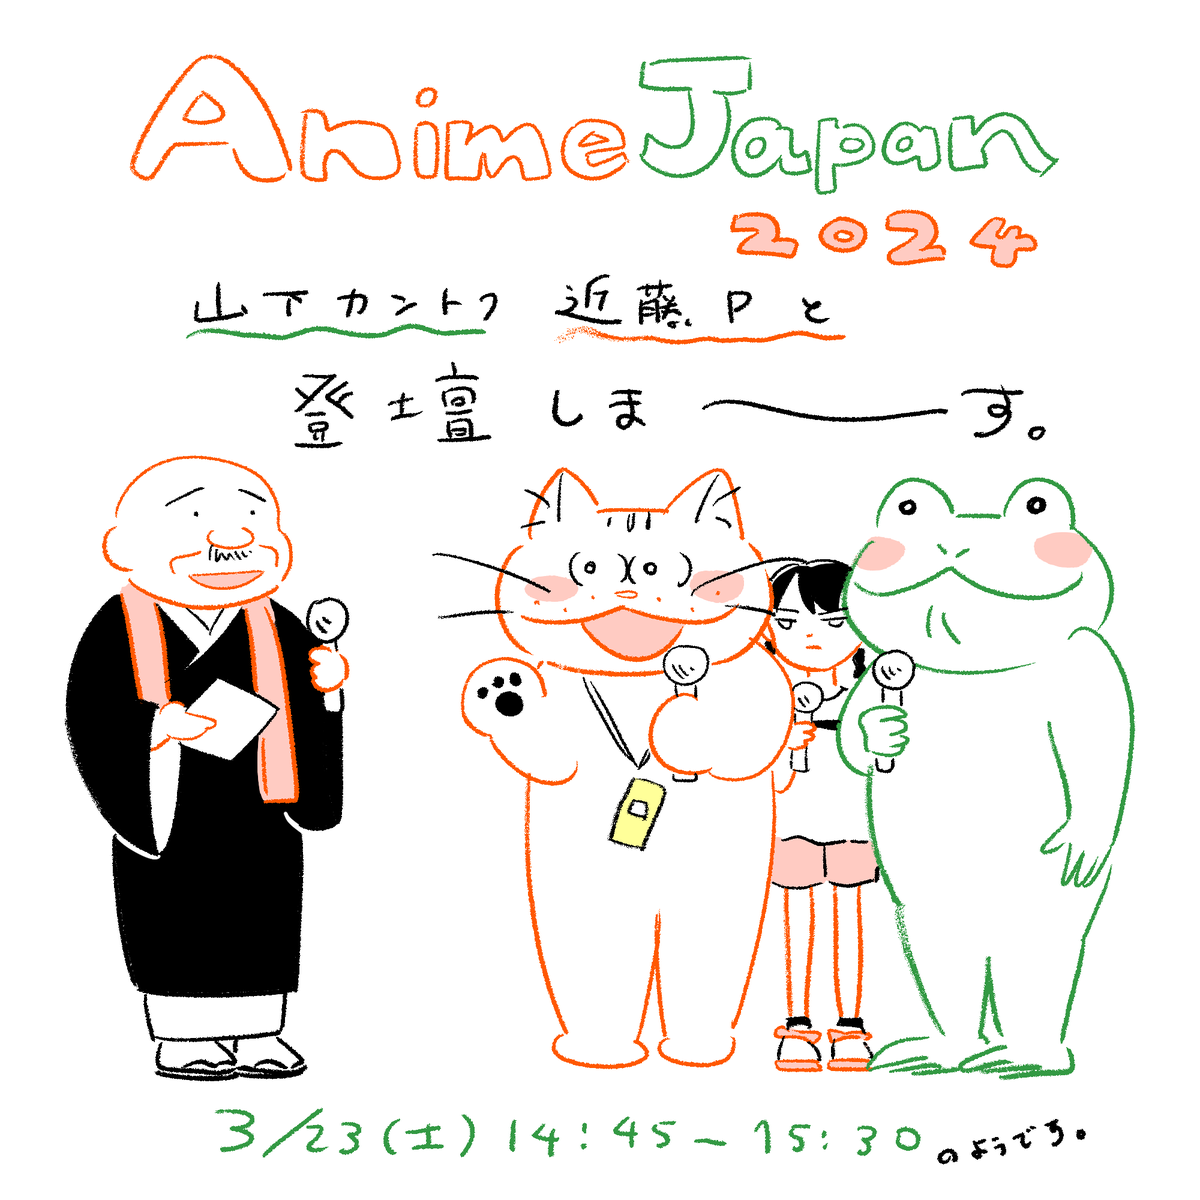 3月23日(土)#AnimeJapan 2024のクリエイションステージに登壇します!
 山下敦弘監督と近藤慶一Pと「化け猫あんずちゃん」制作秘話などをお話するみたいです。 司会は藤津亮太さん。一生懸命話しますので良かったら遊びにきてください〜😺
 https://t.co/aCuh1dFX9S

#化け猫あんずちゃん #AJ2024 